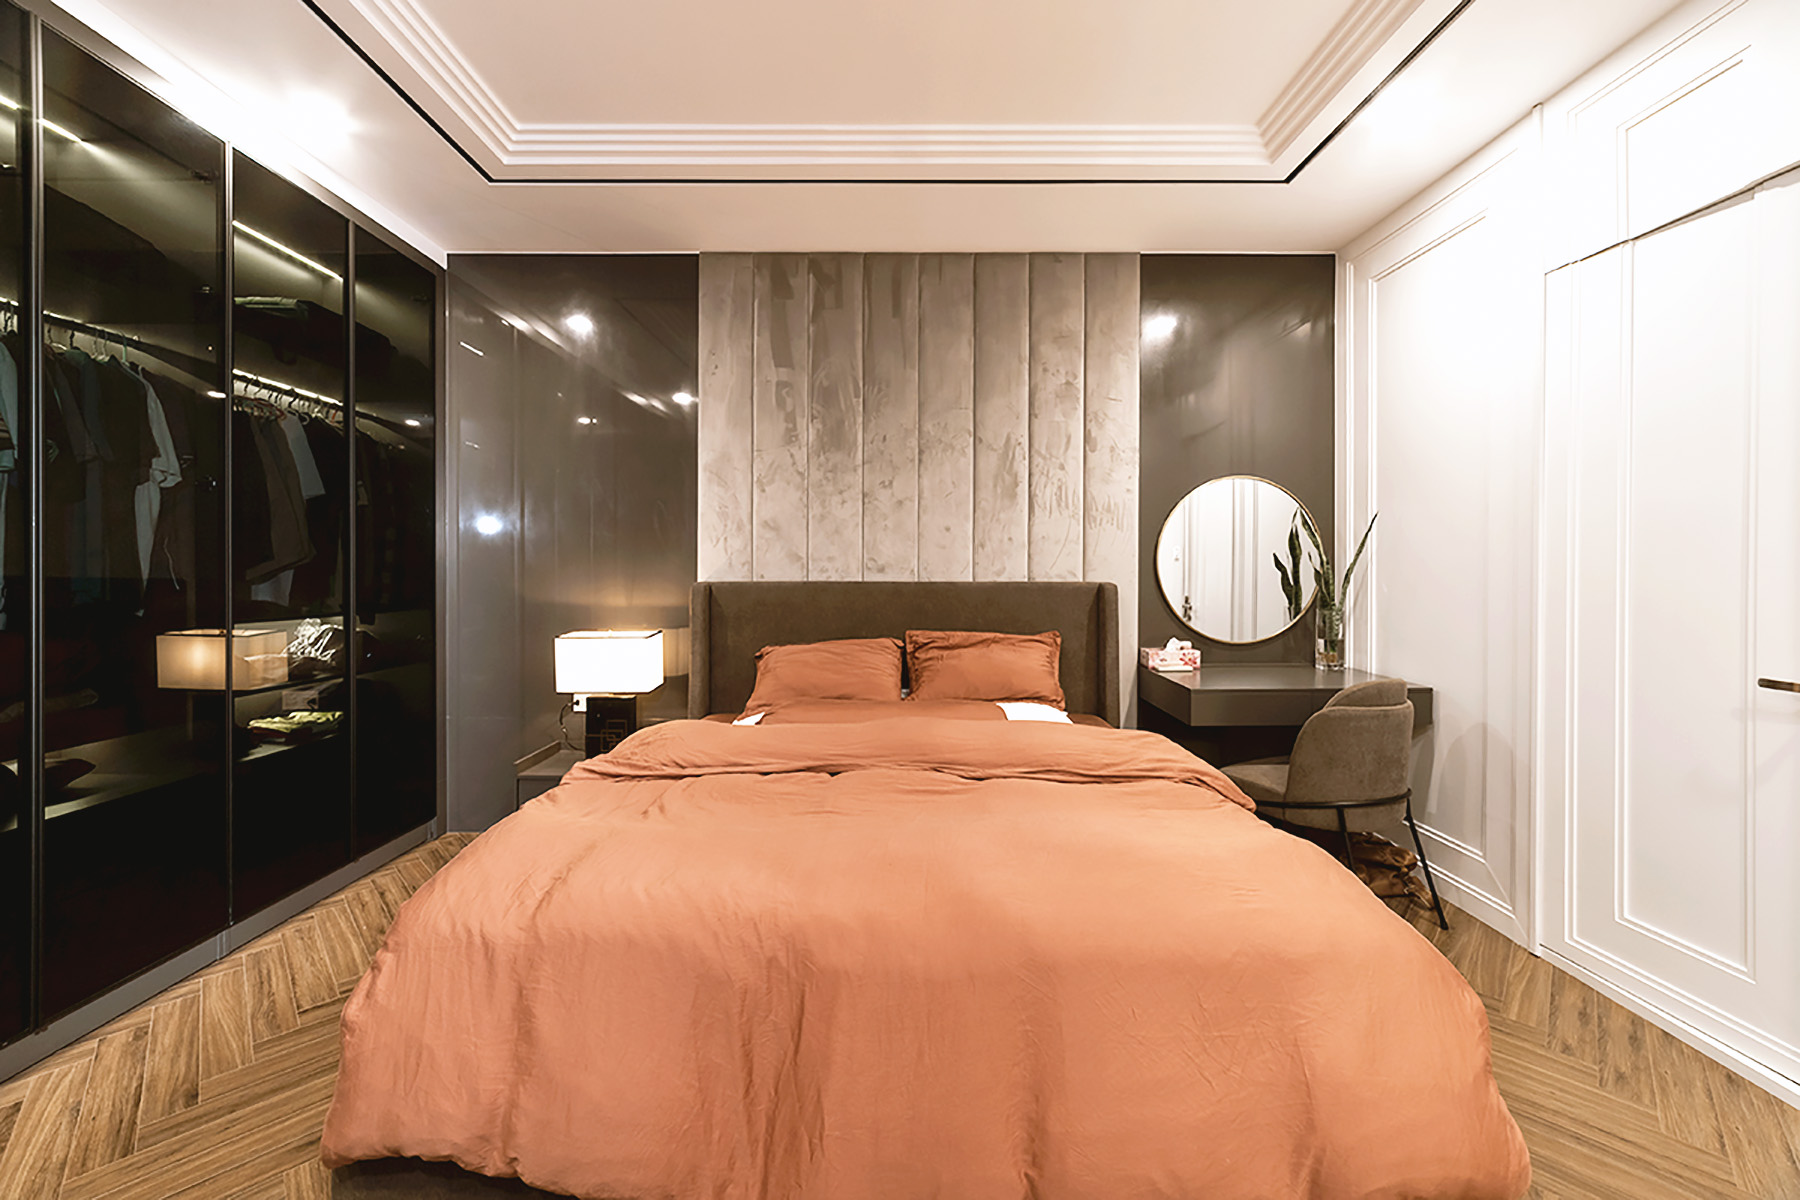 Phòng ngủ Master, phong cách Hiện đại Modern, hoàn thiện nội thất, căn hộ Saigon Pearl Topaz 2